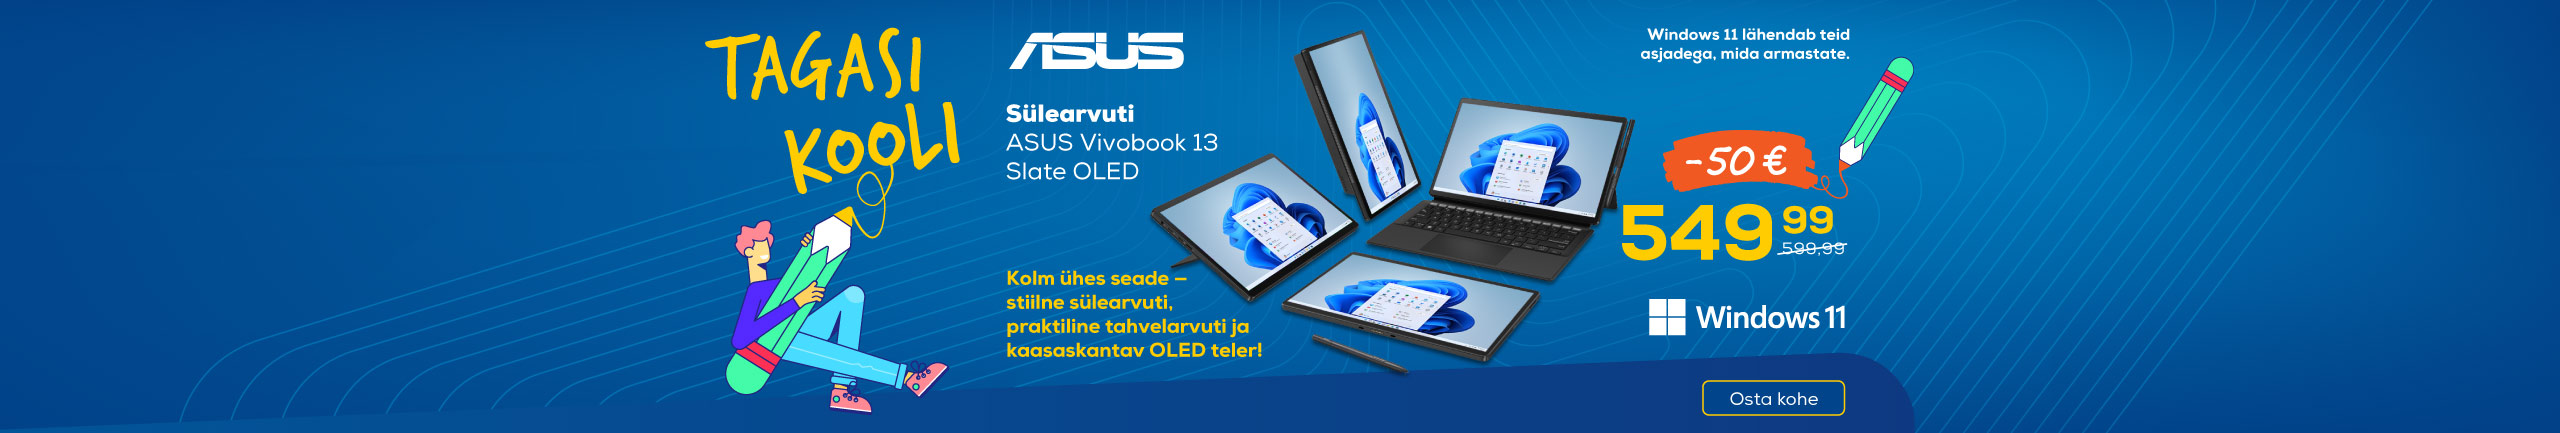 ASUS Vivobook 13 Slate OLED